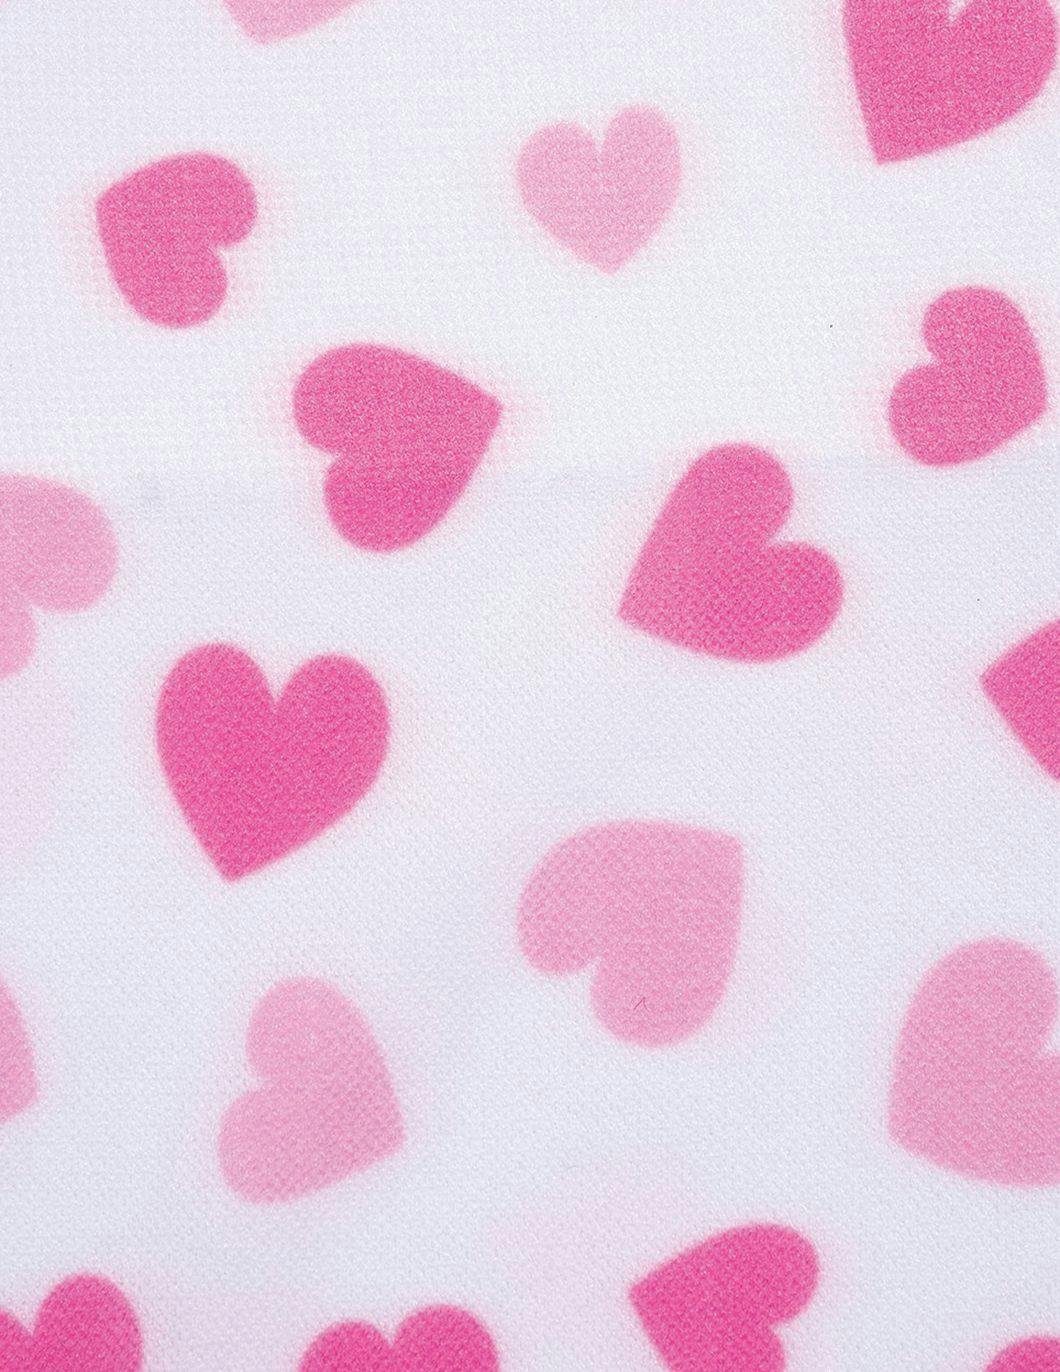 cuteiful-compression-socks-8-15-mmhg-cupid-hearts-print-alt